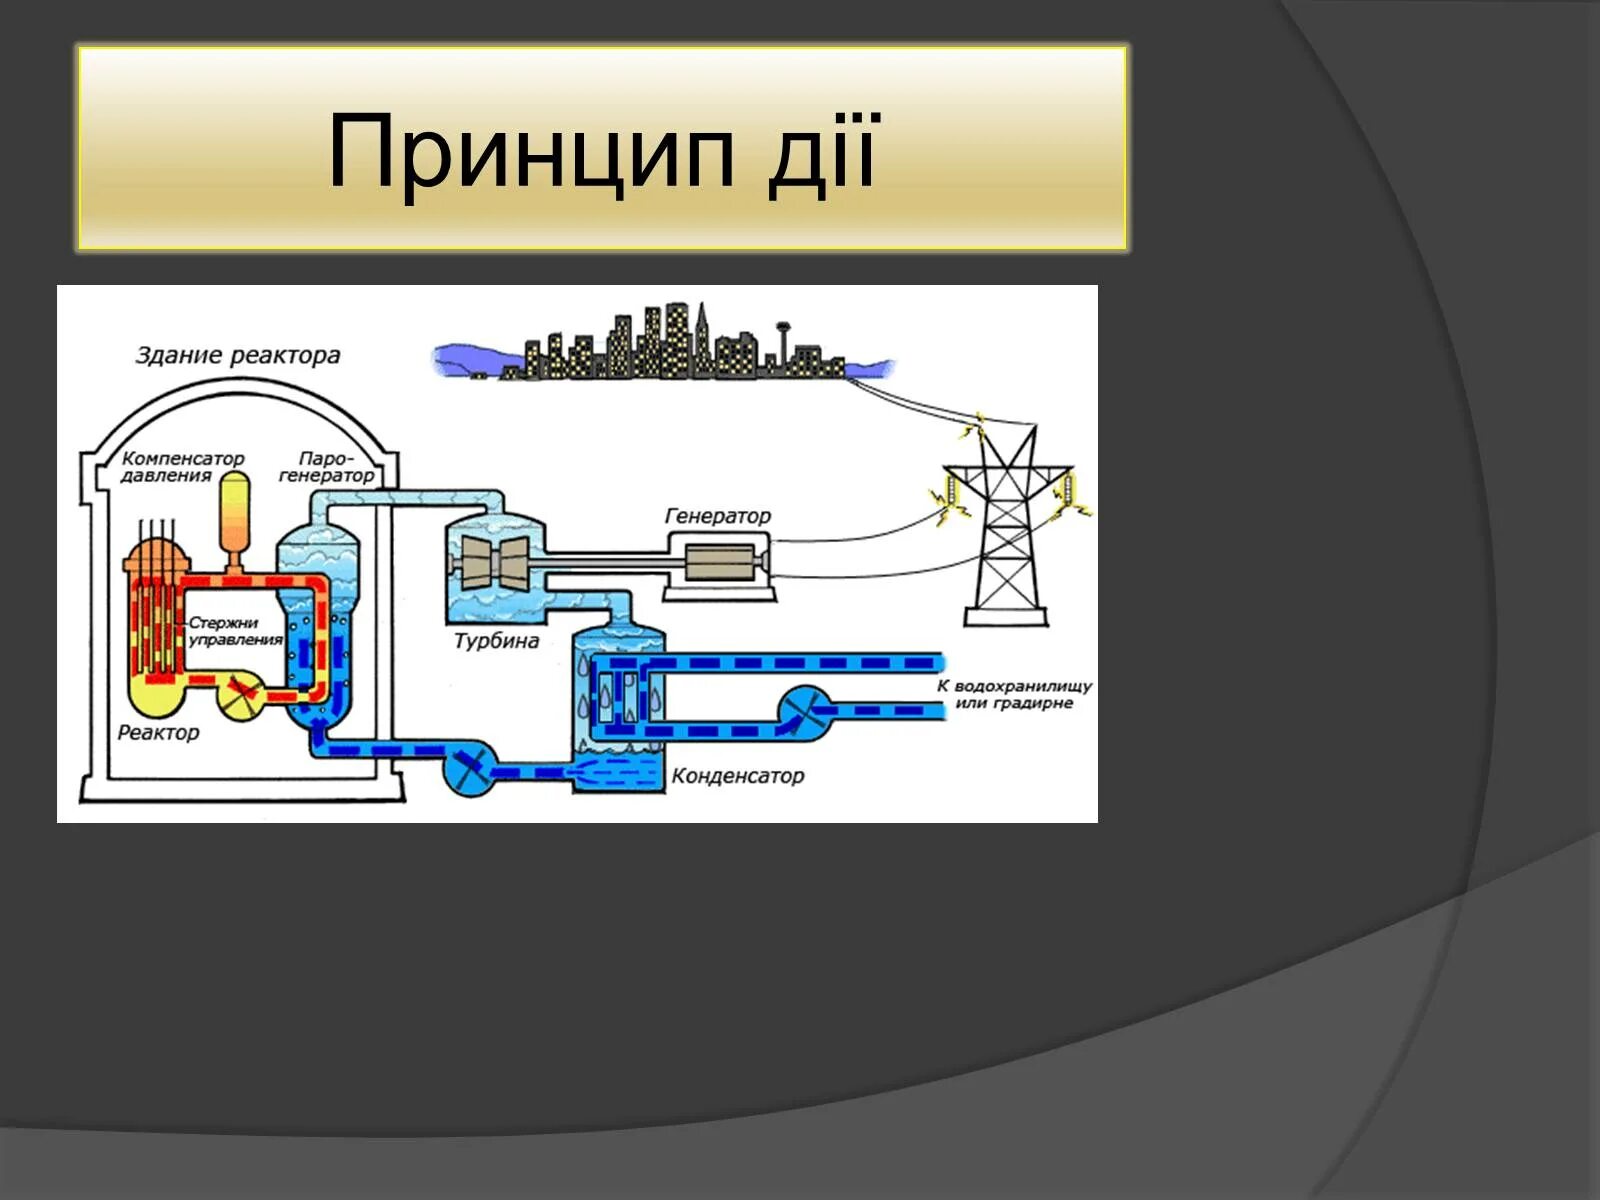 Турбина ядерного реактора. Презентация ядерный реактор 9 класс физика. Применение ядерных реакторов. Турбина в ядерном реакторе Назначение.